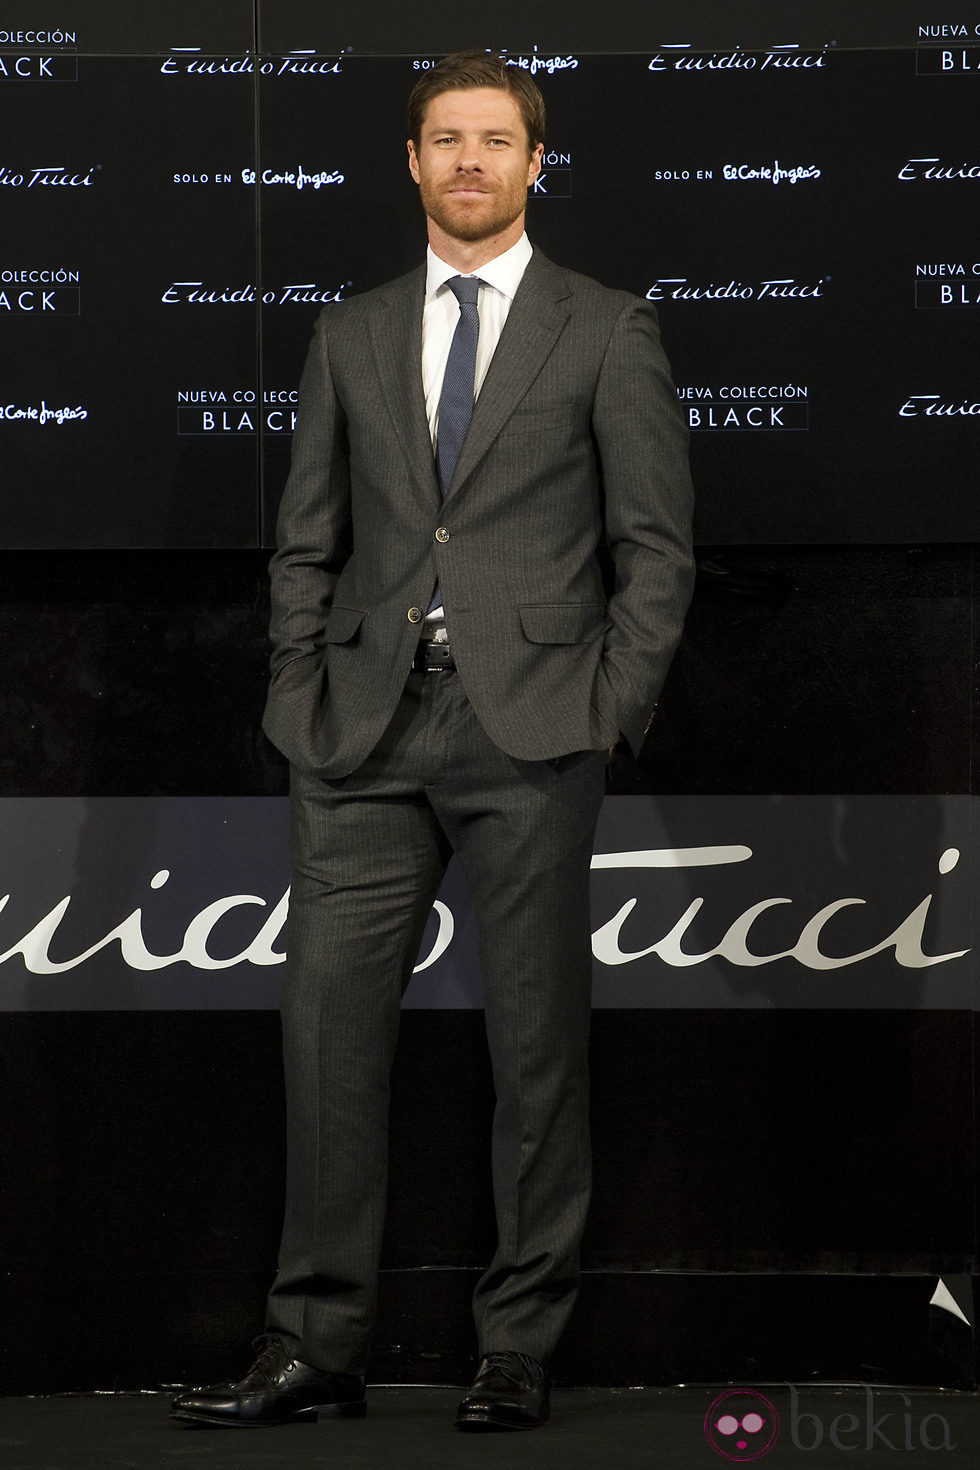 Xabi Alonso, imagen de la colección 'Black' de Emidio Tucci